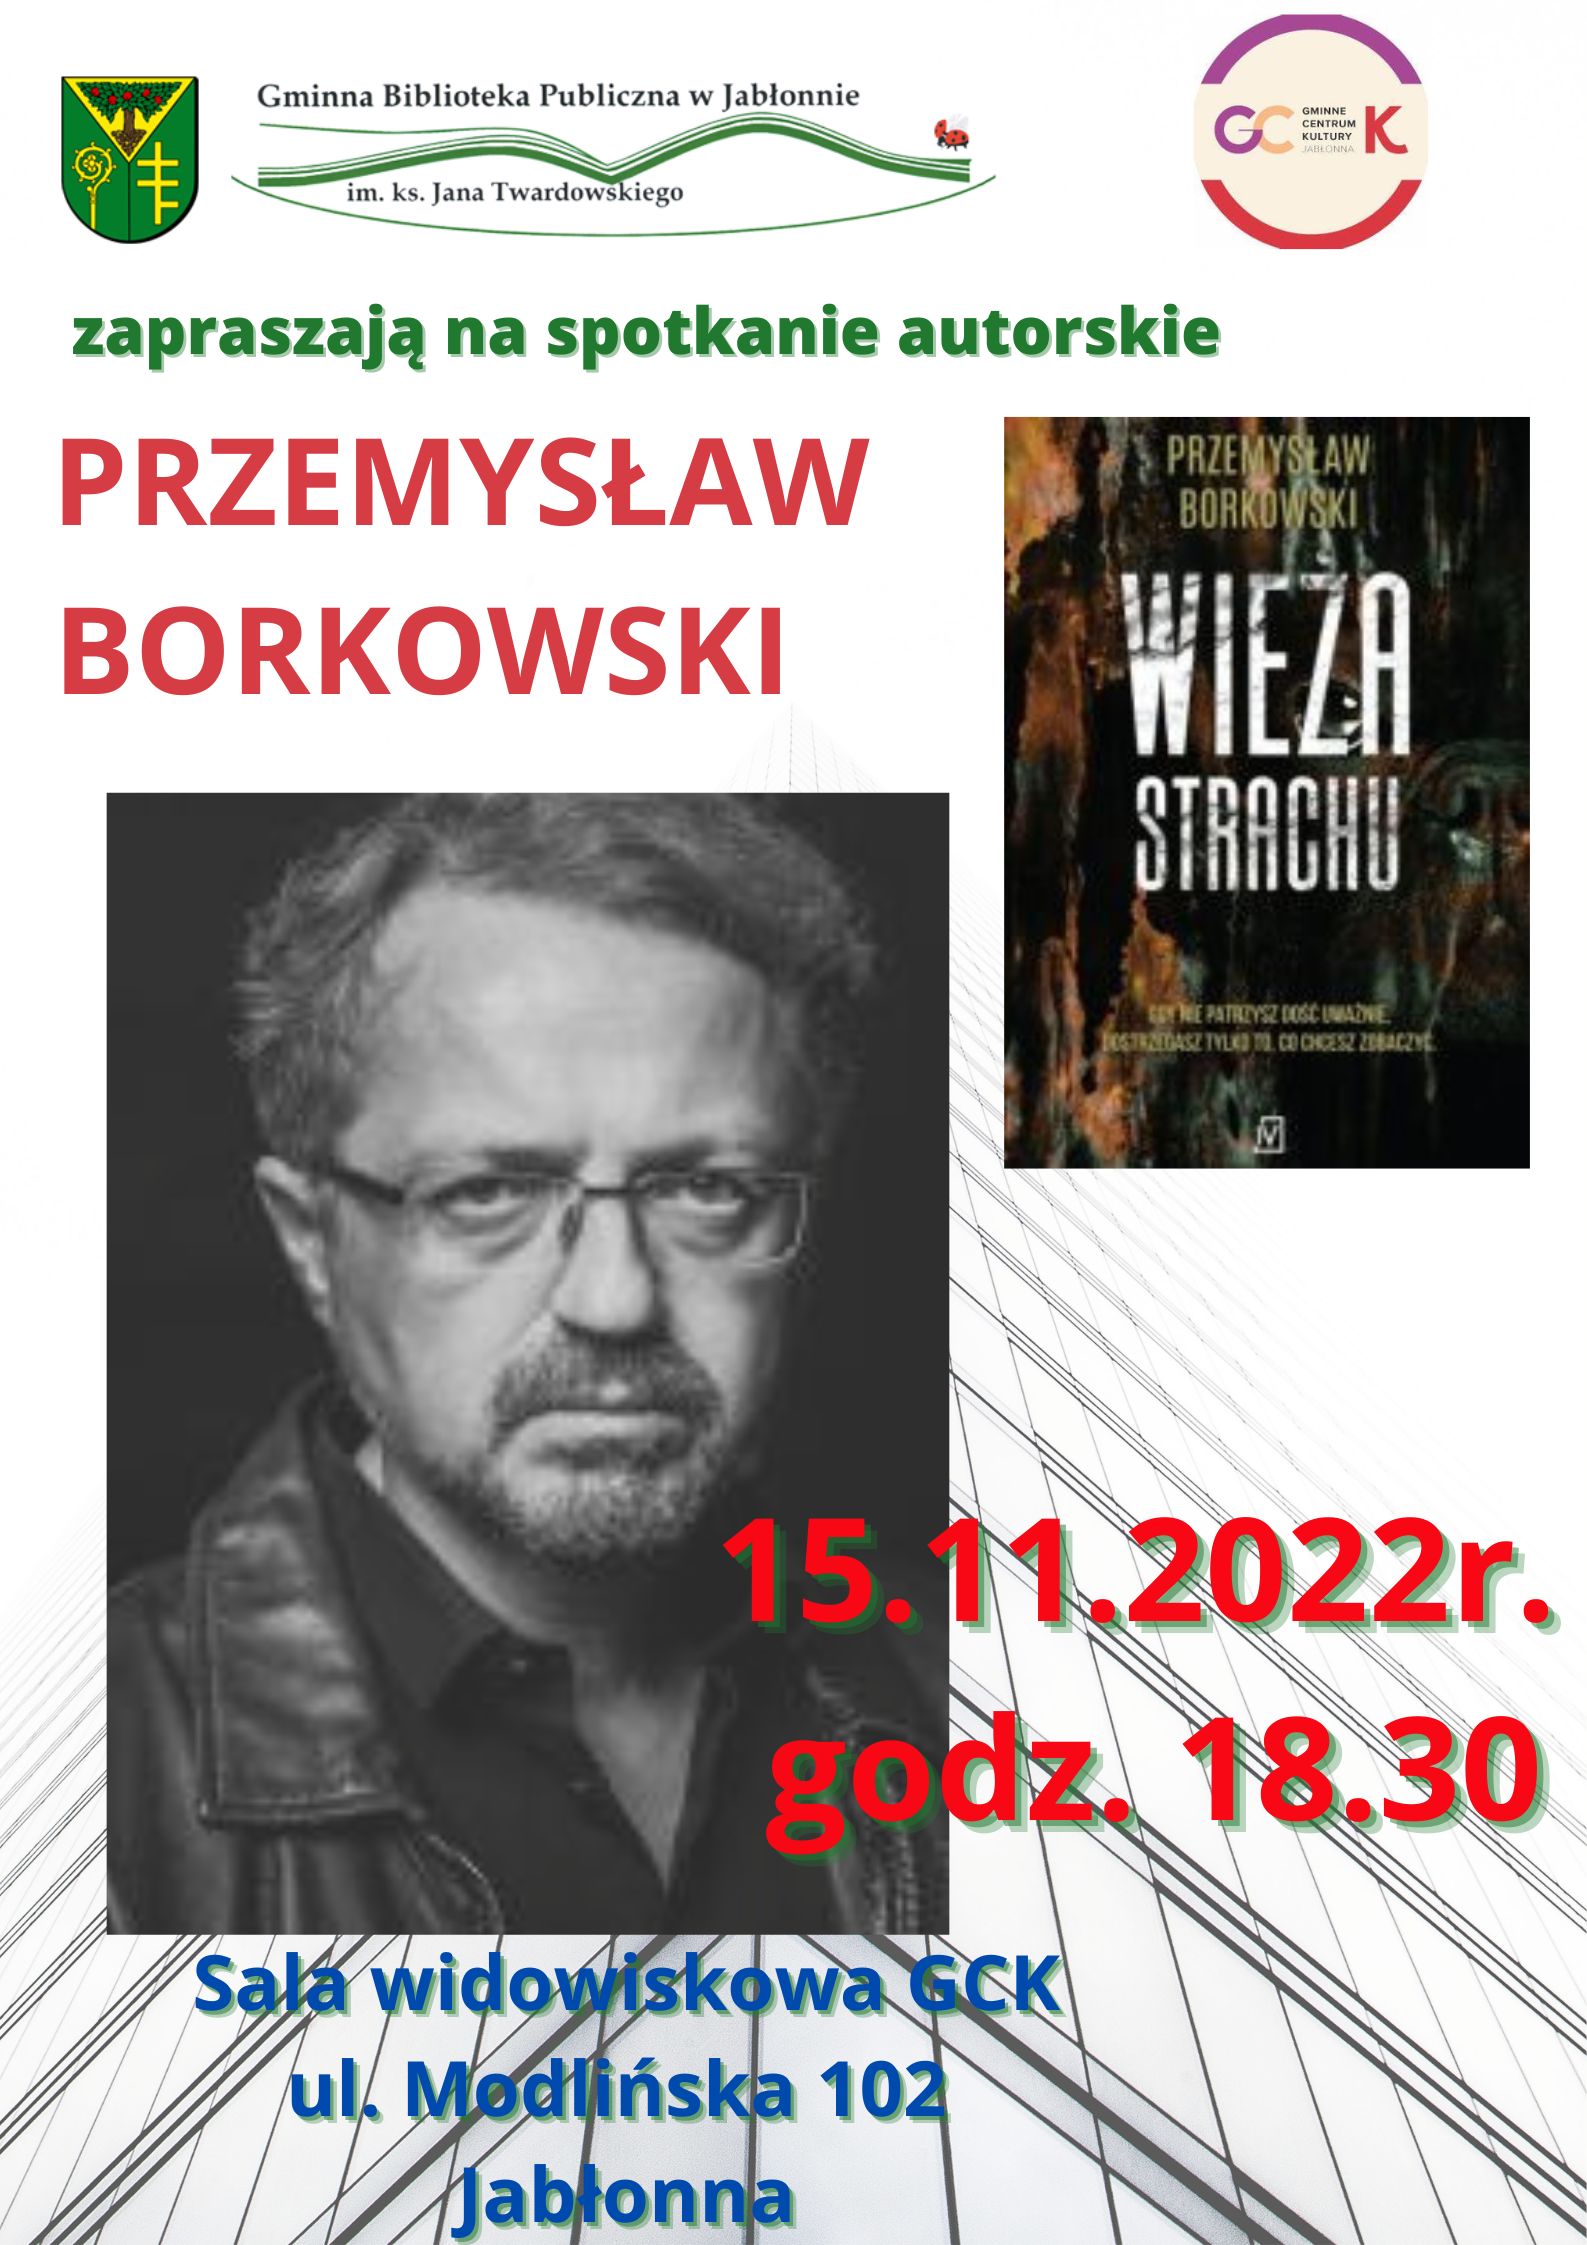 Plakat informujący o spotkaniu autorskim z Przemysławem Borkowskim